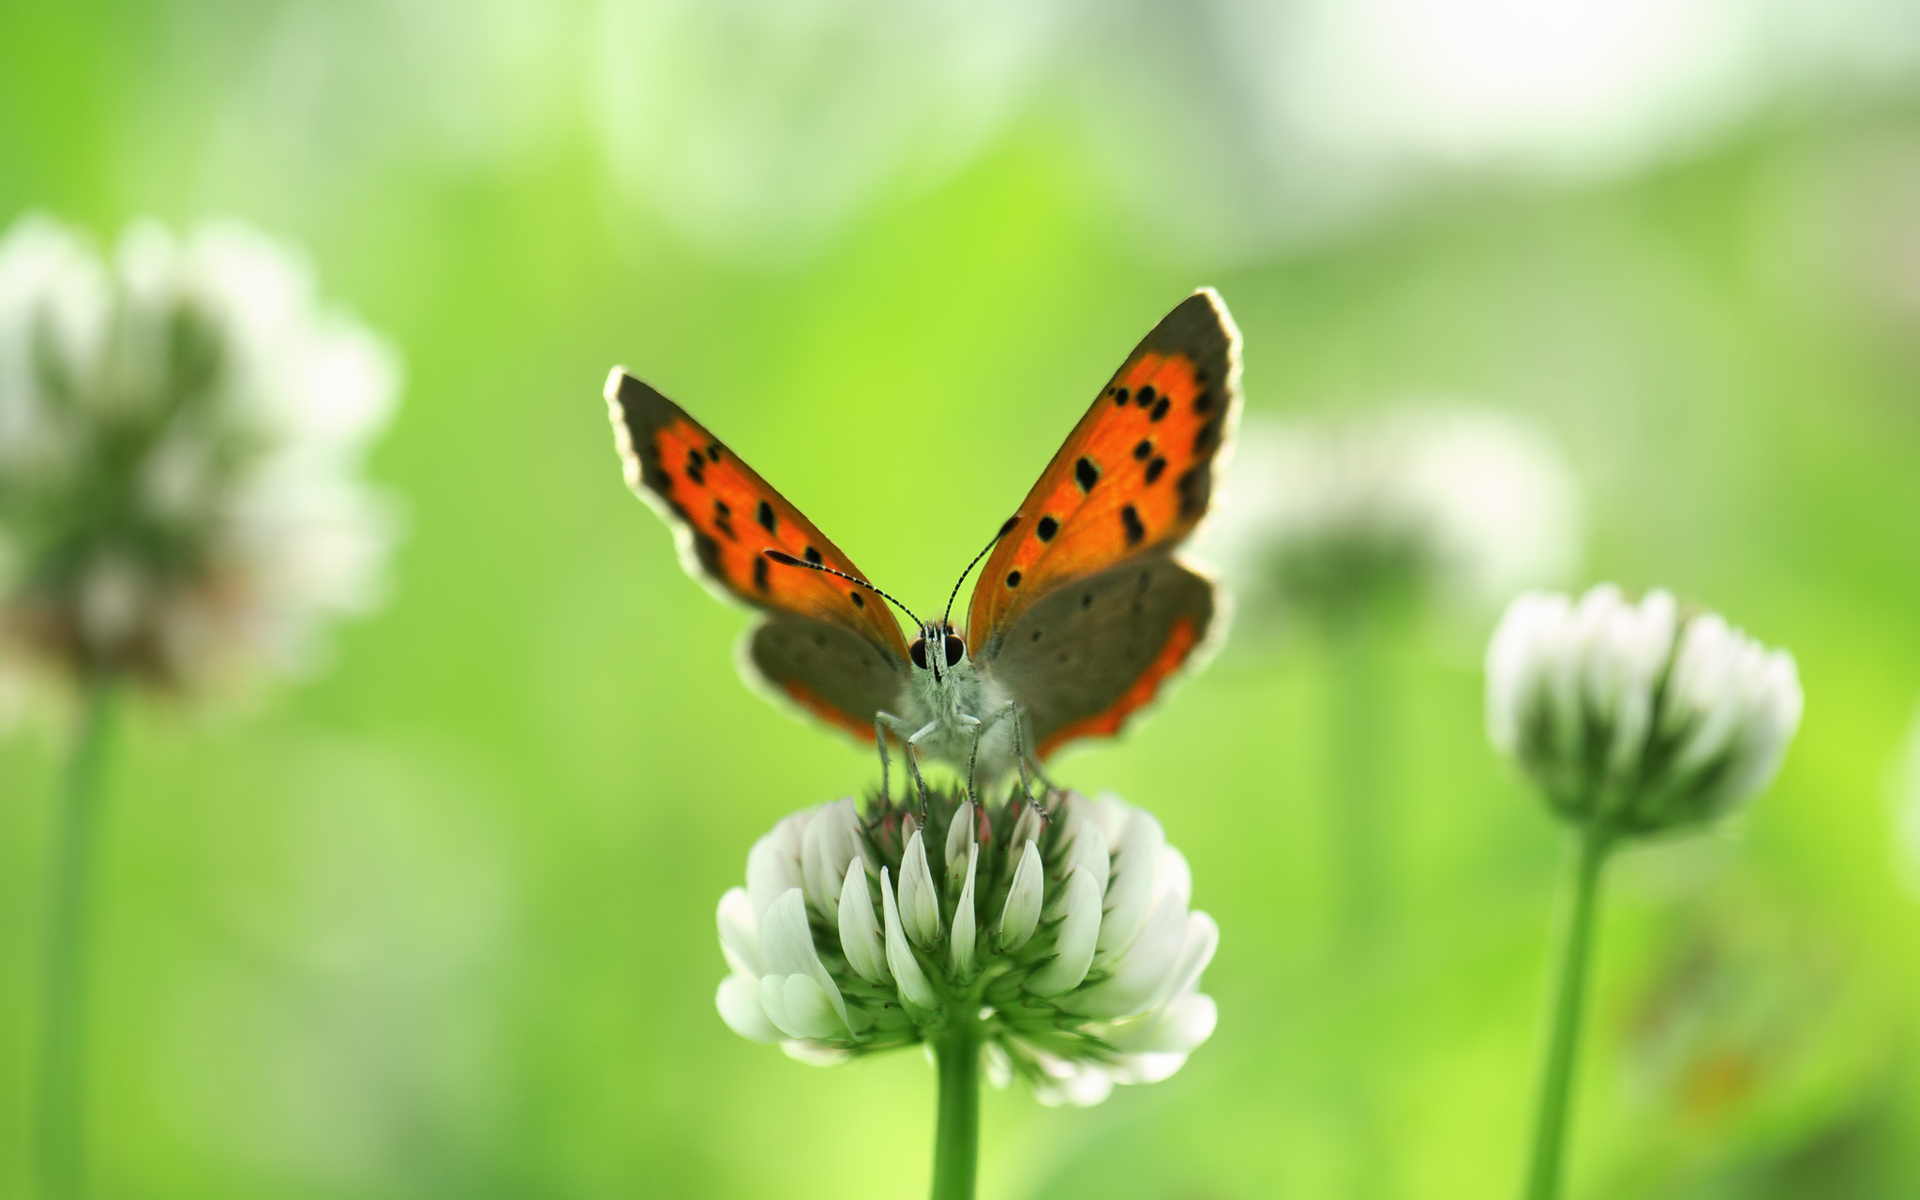 Descarga gratuita de fondo de pantalla para móvil de Animales, Naturaleza, Flor, Insecto, Mariposa.